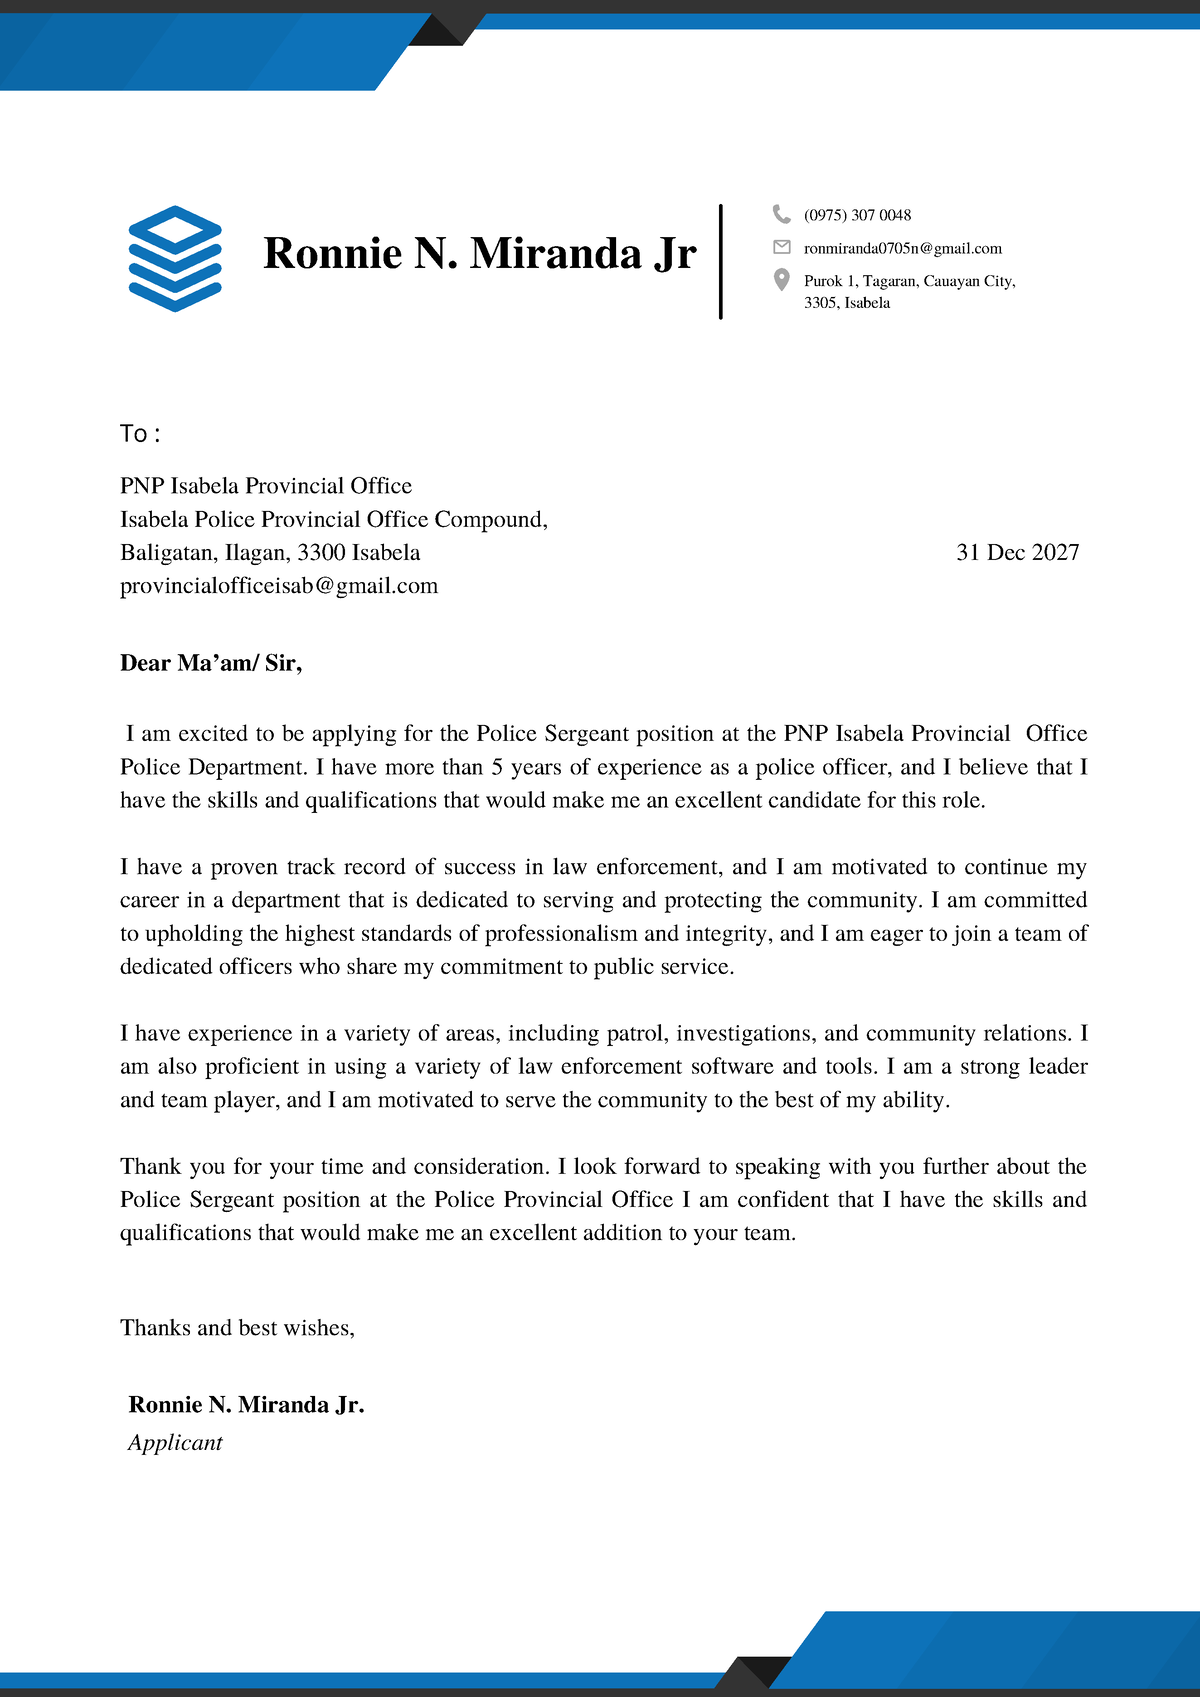 cover letter for pnp application